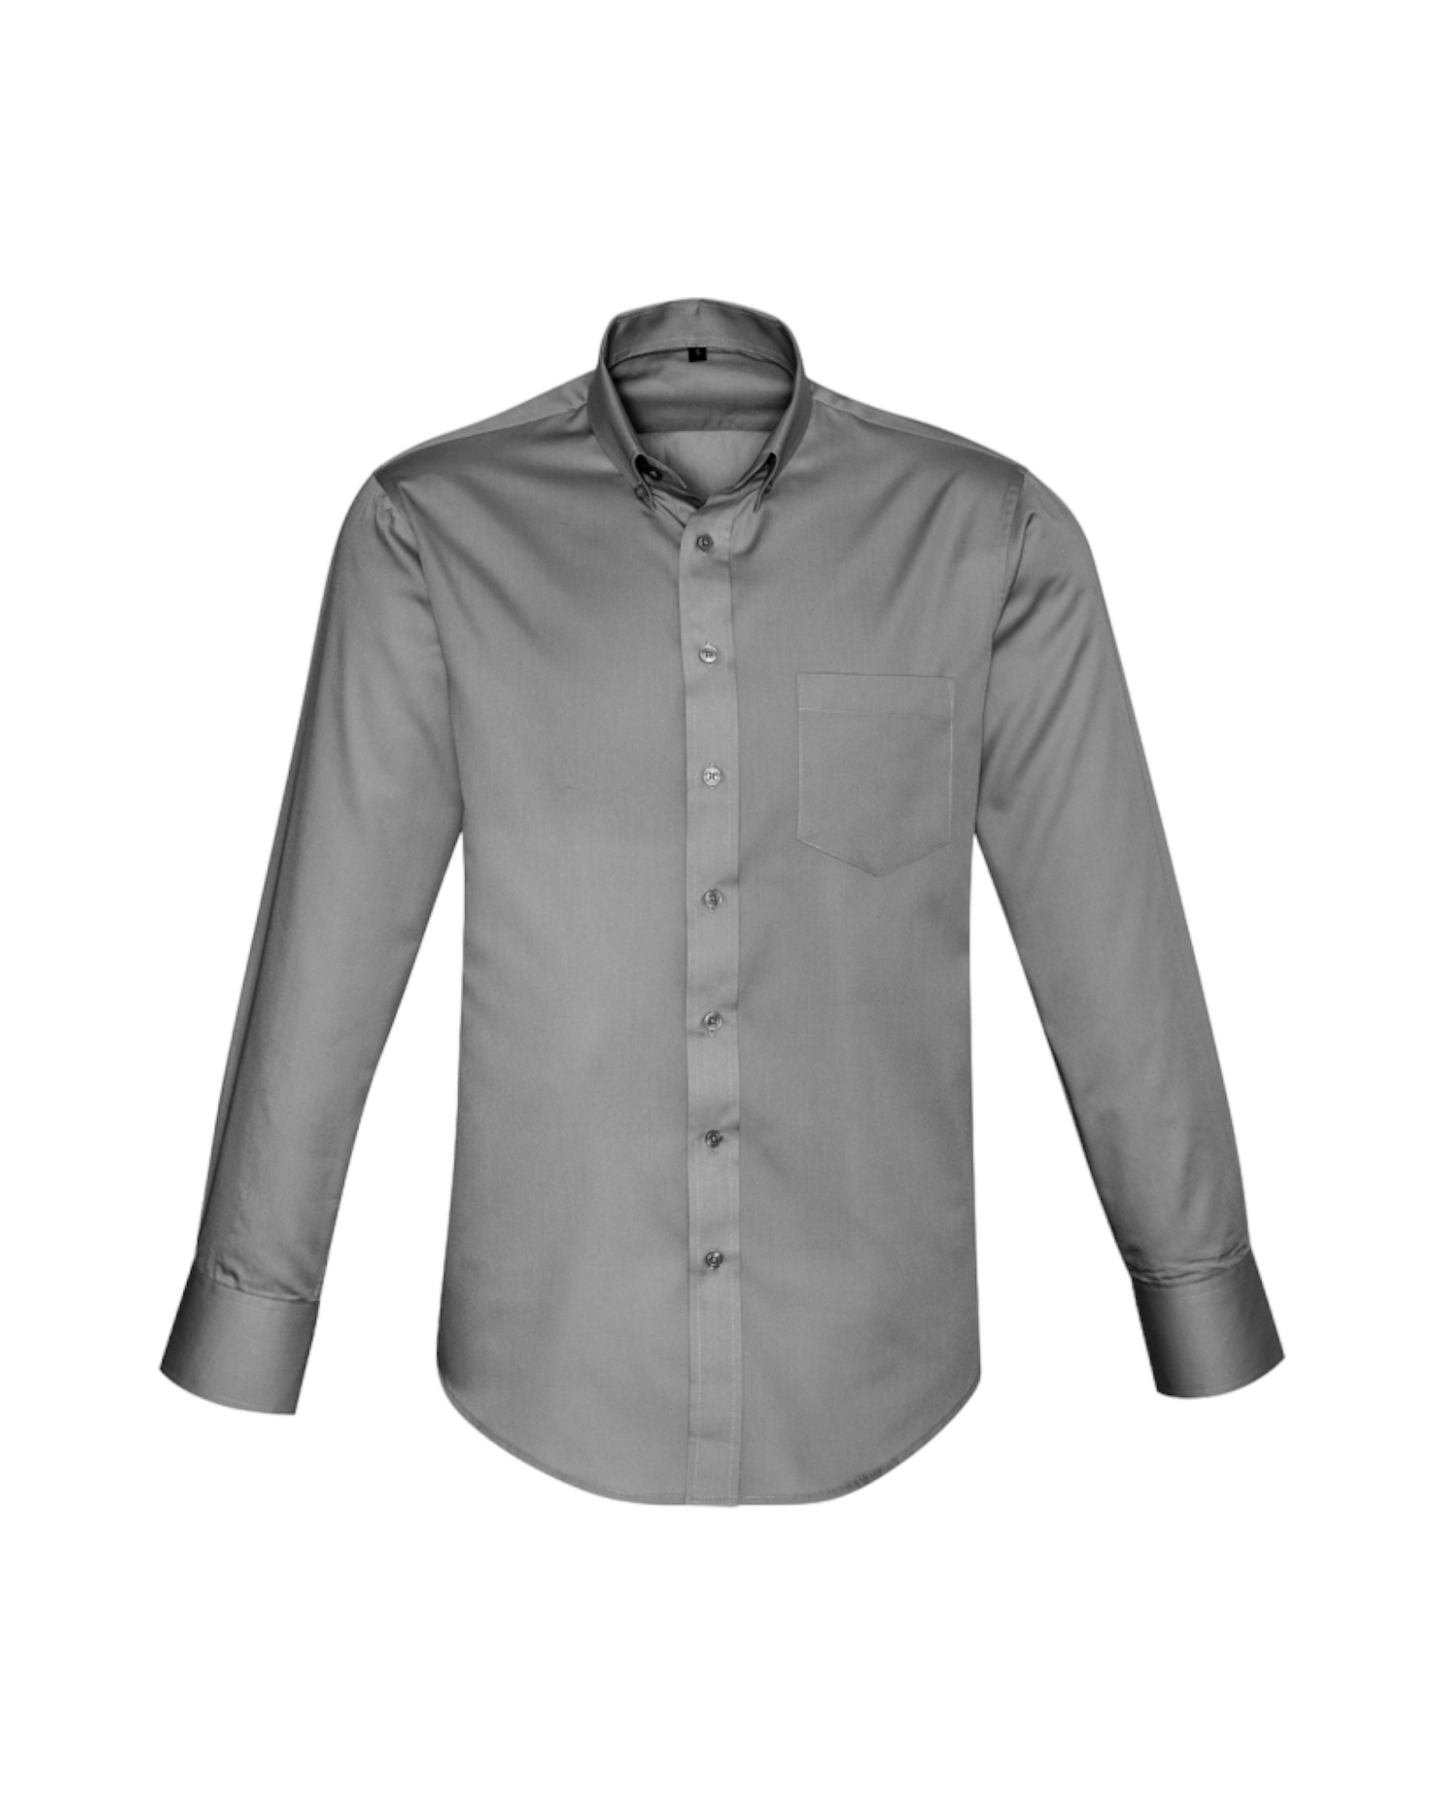 Chemise à manches longues Dalton pour hommes Fashion Biz #S522ML